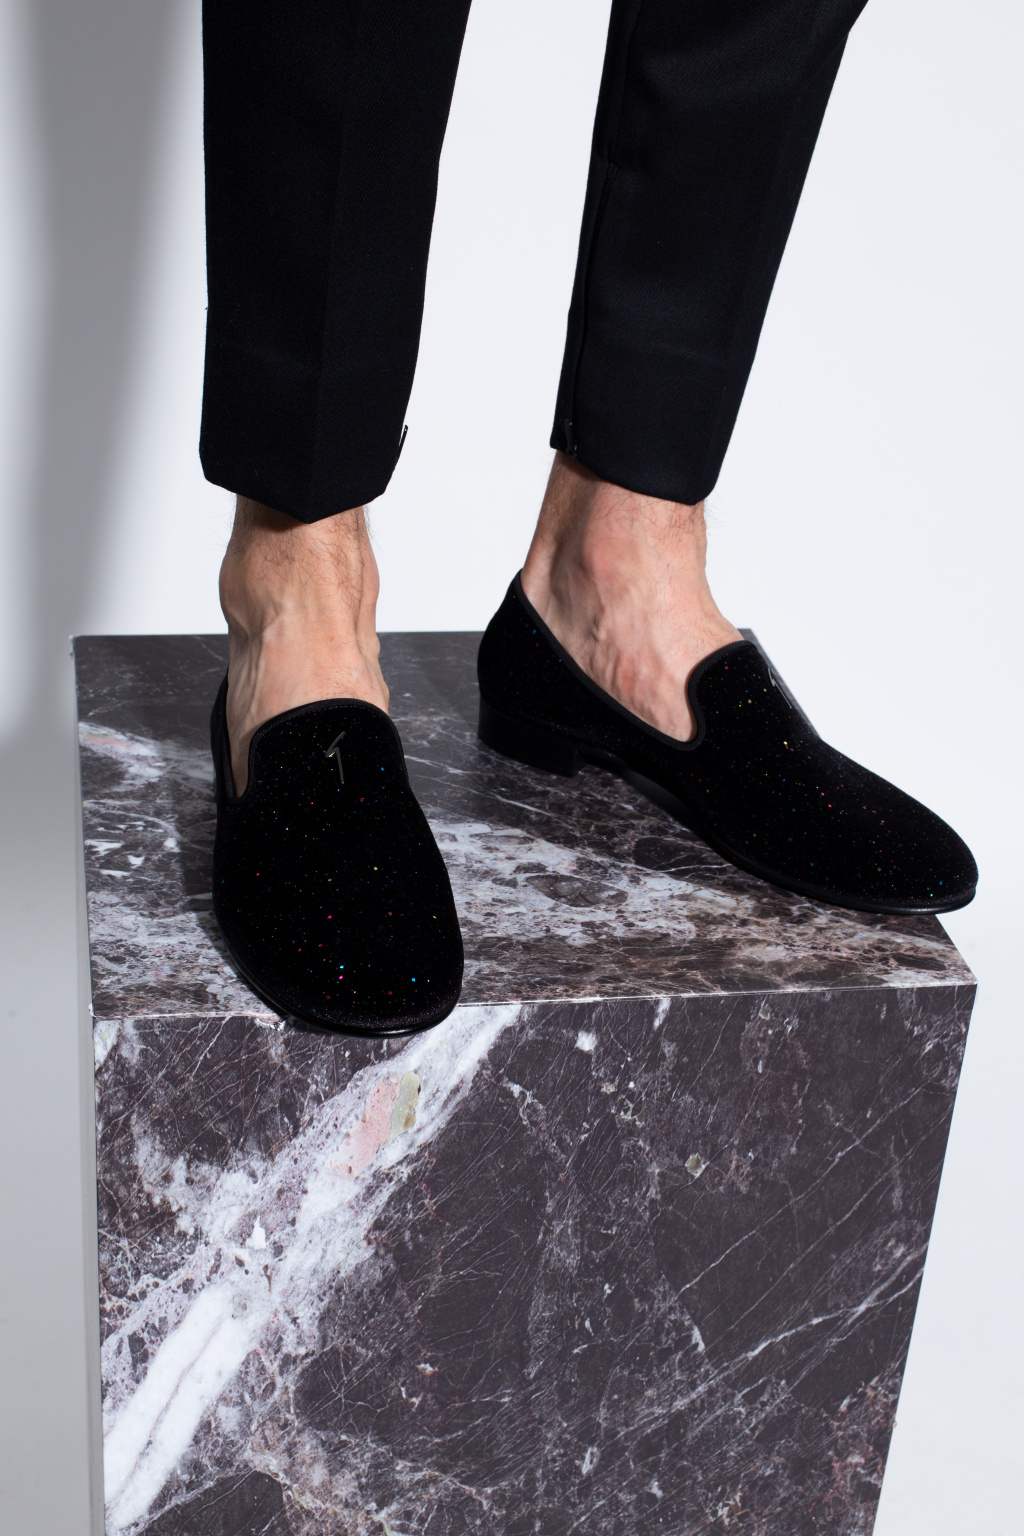 Giuseppe Zanotti ‘Kevin’ velvet loafers